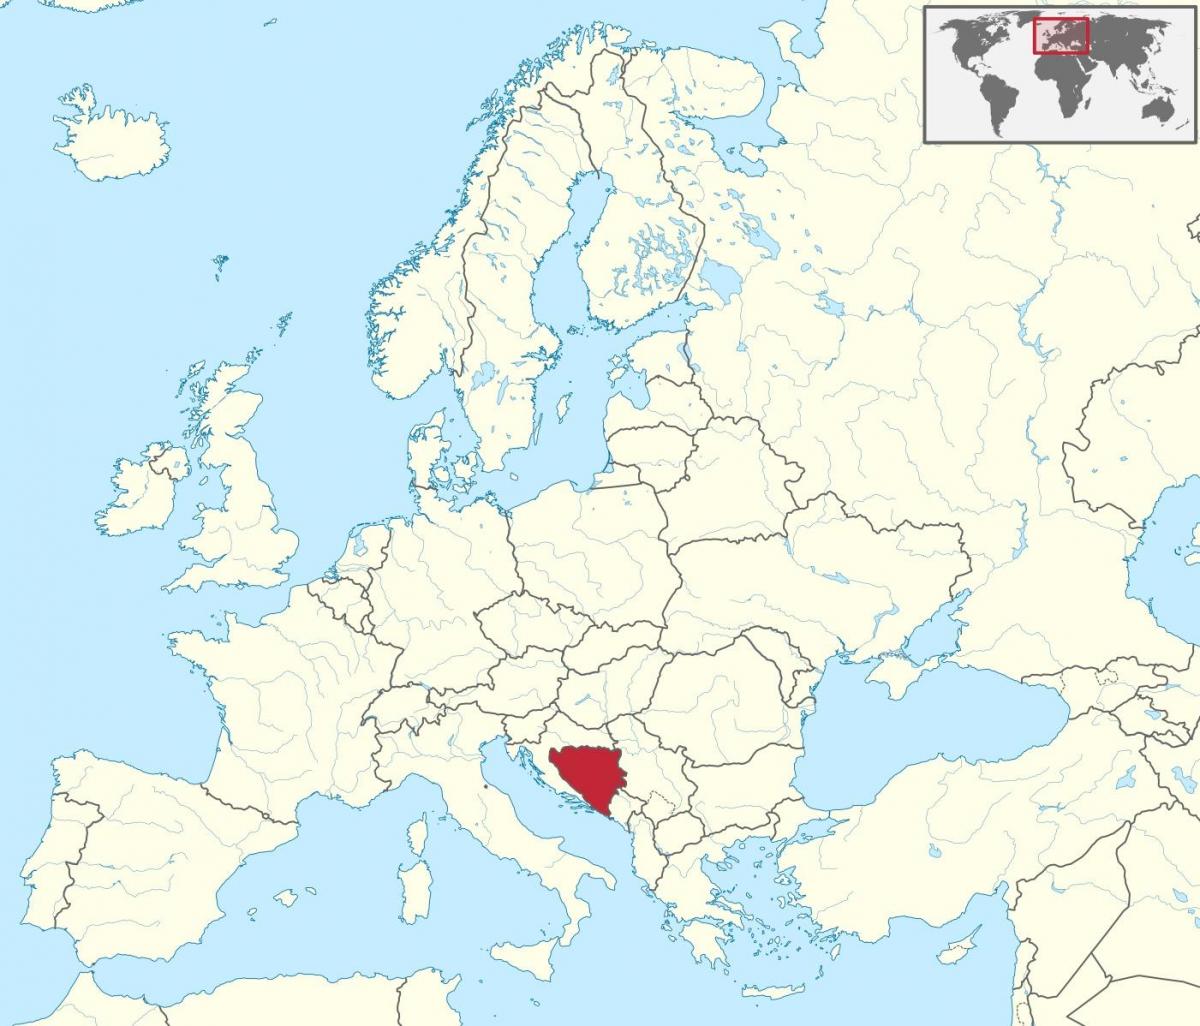 Bosnja në një hartë e evropës